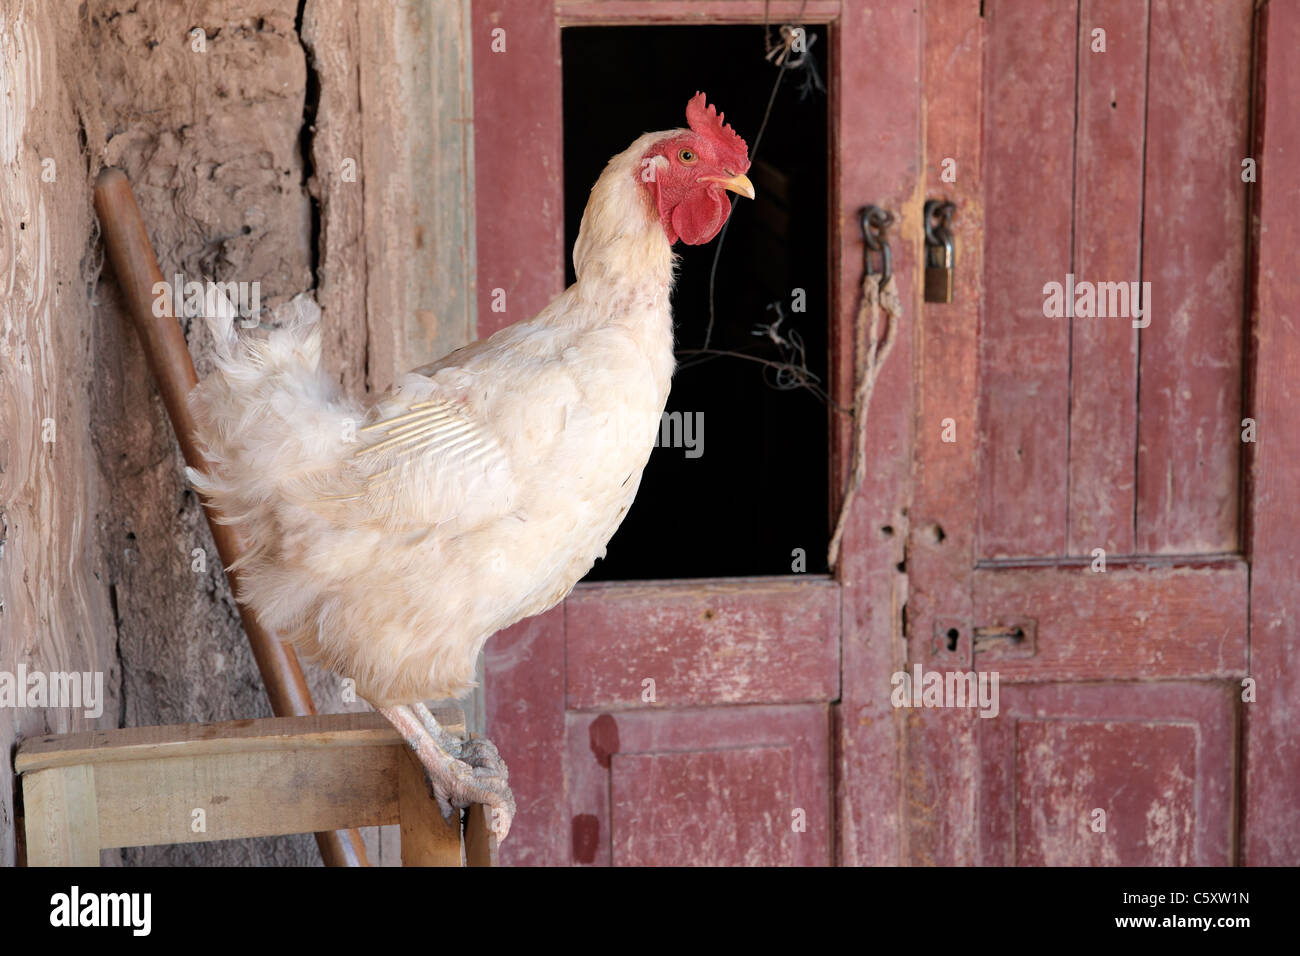 Coq assis dans une grange sur une ferme rurale Banque D'Images